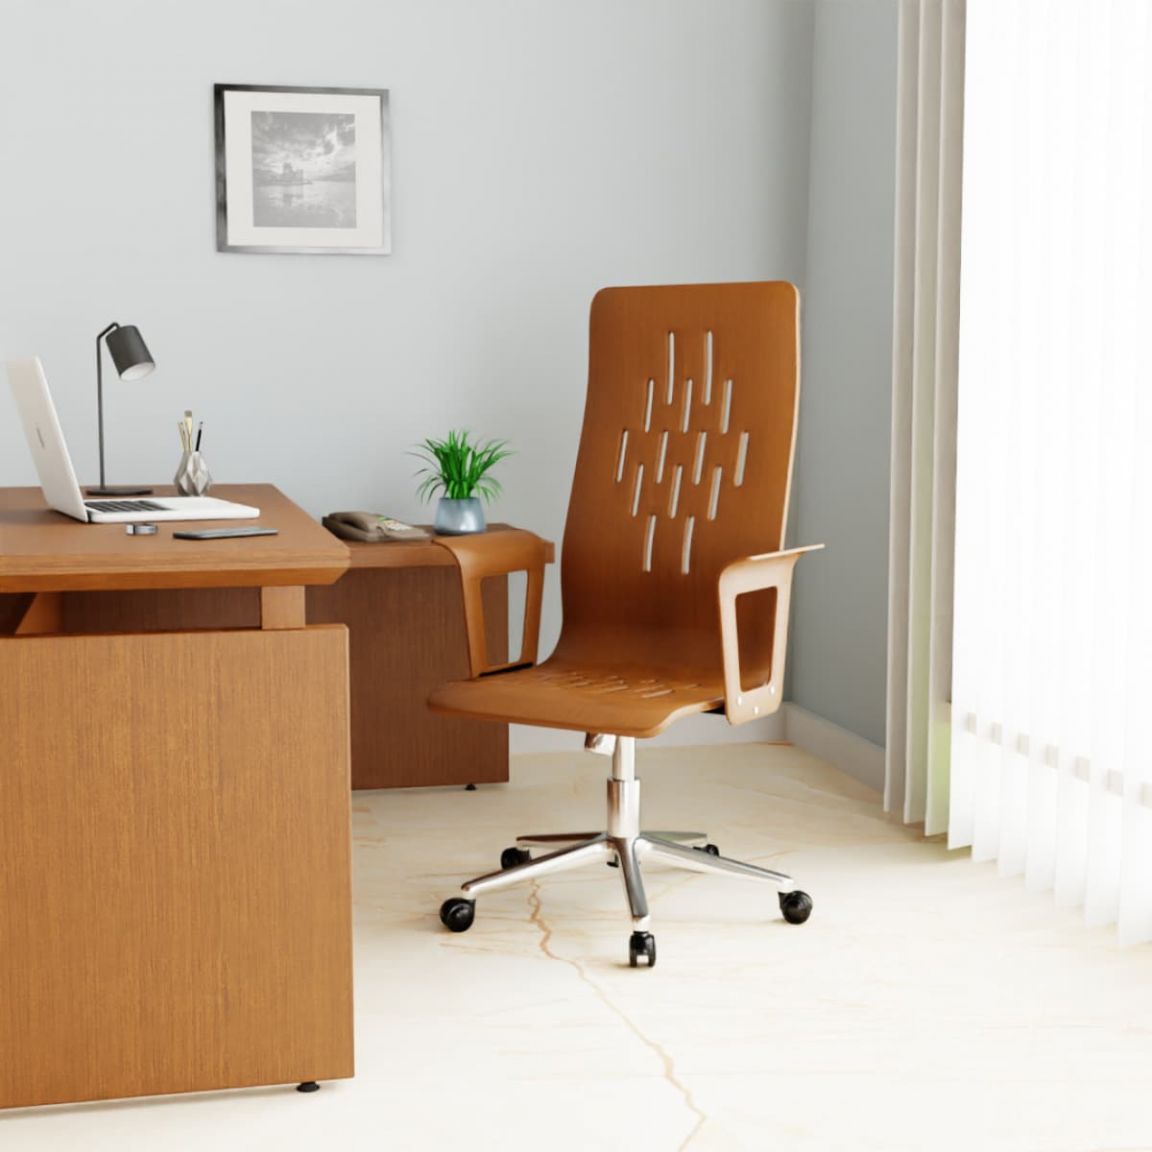 Thiết kế ghế gỗ văn phòng theo phong cách hiện đại